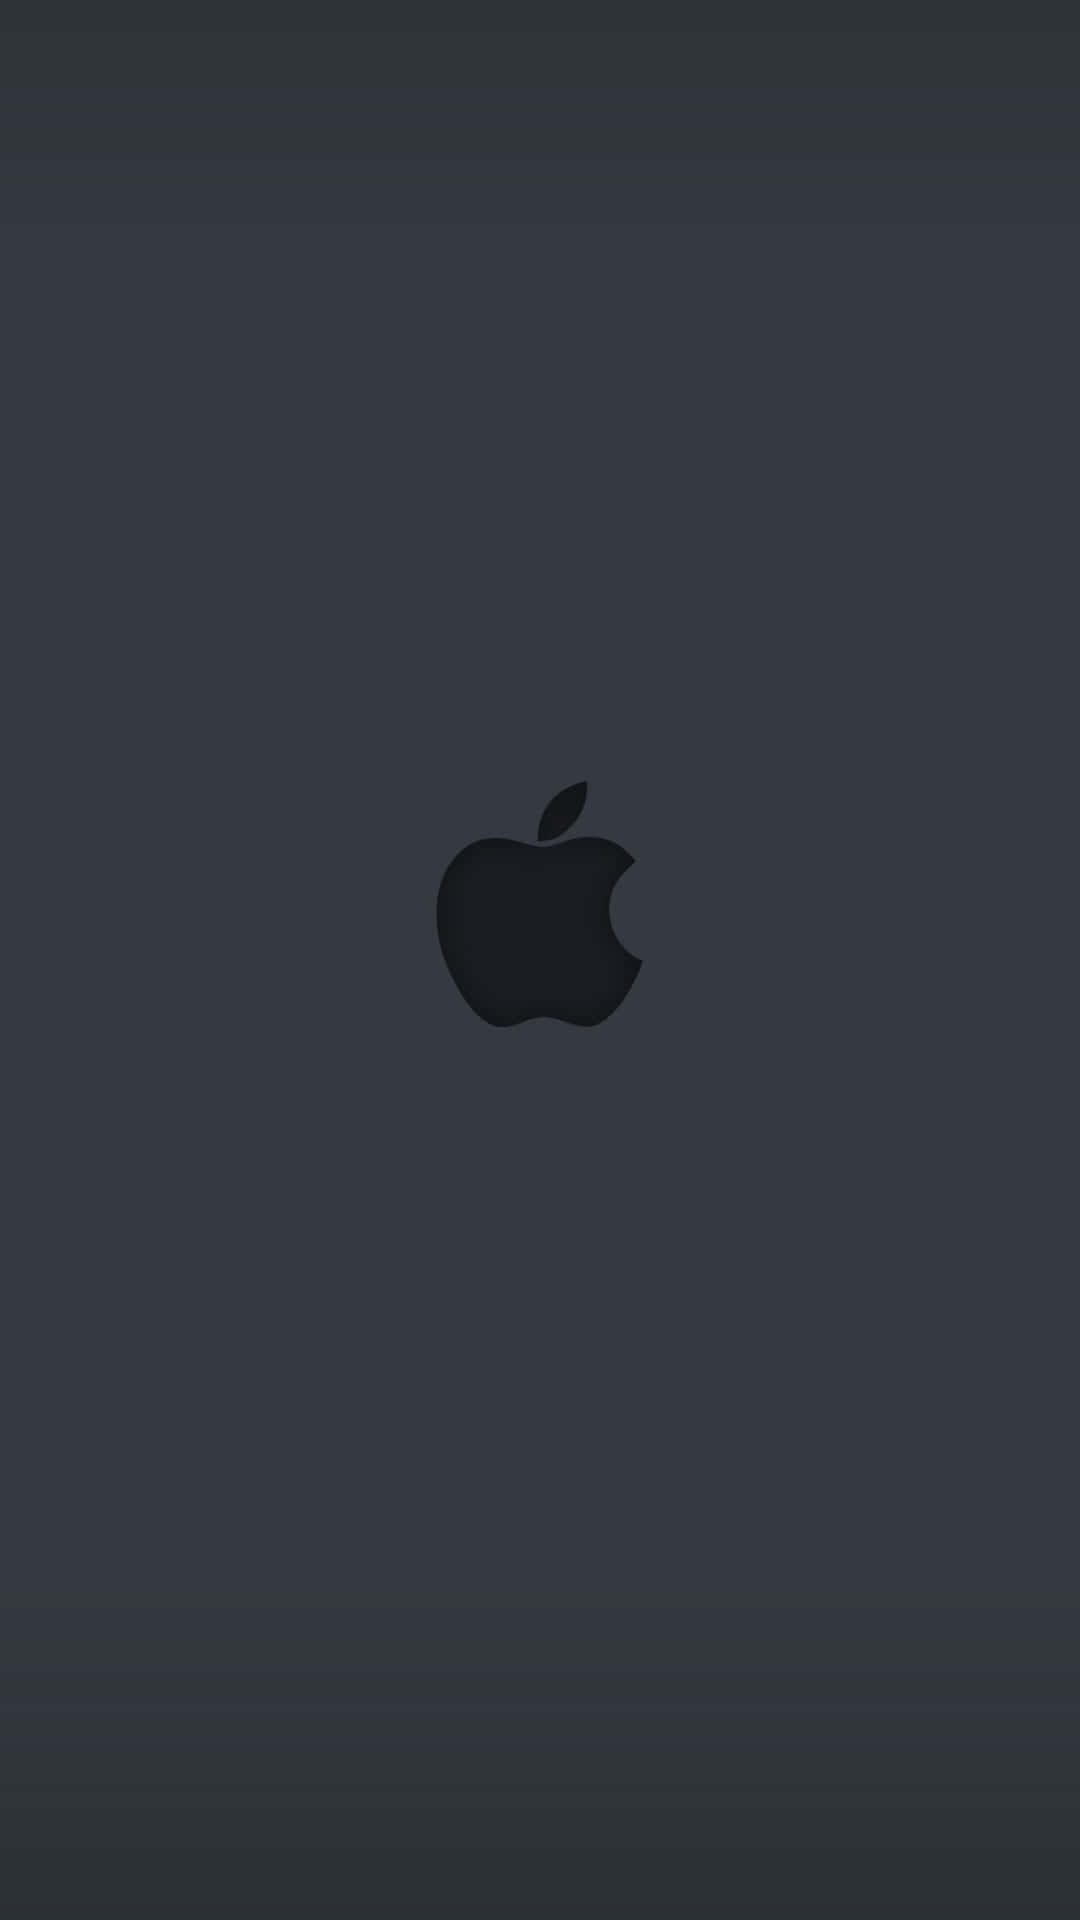 Logode Apple Negro En Un Sencillo Gris Fondo de pantalla